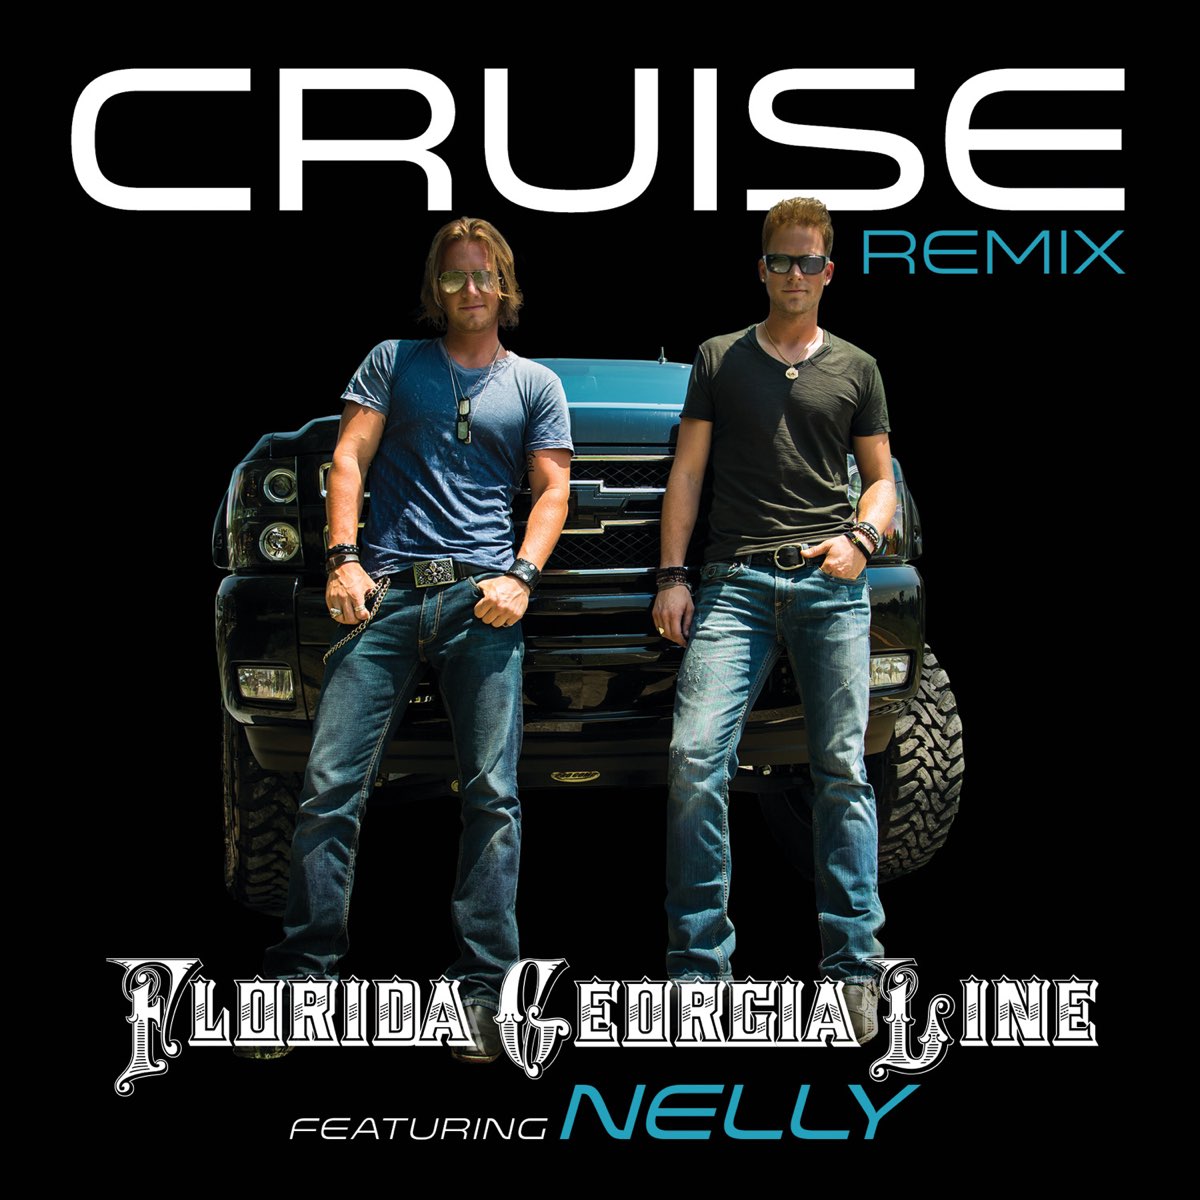 cruise florida georgia line ft nelly lyrics